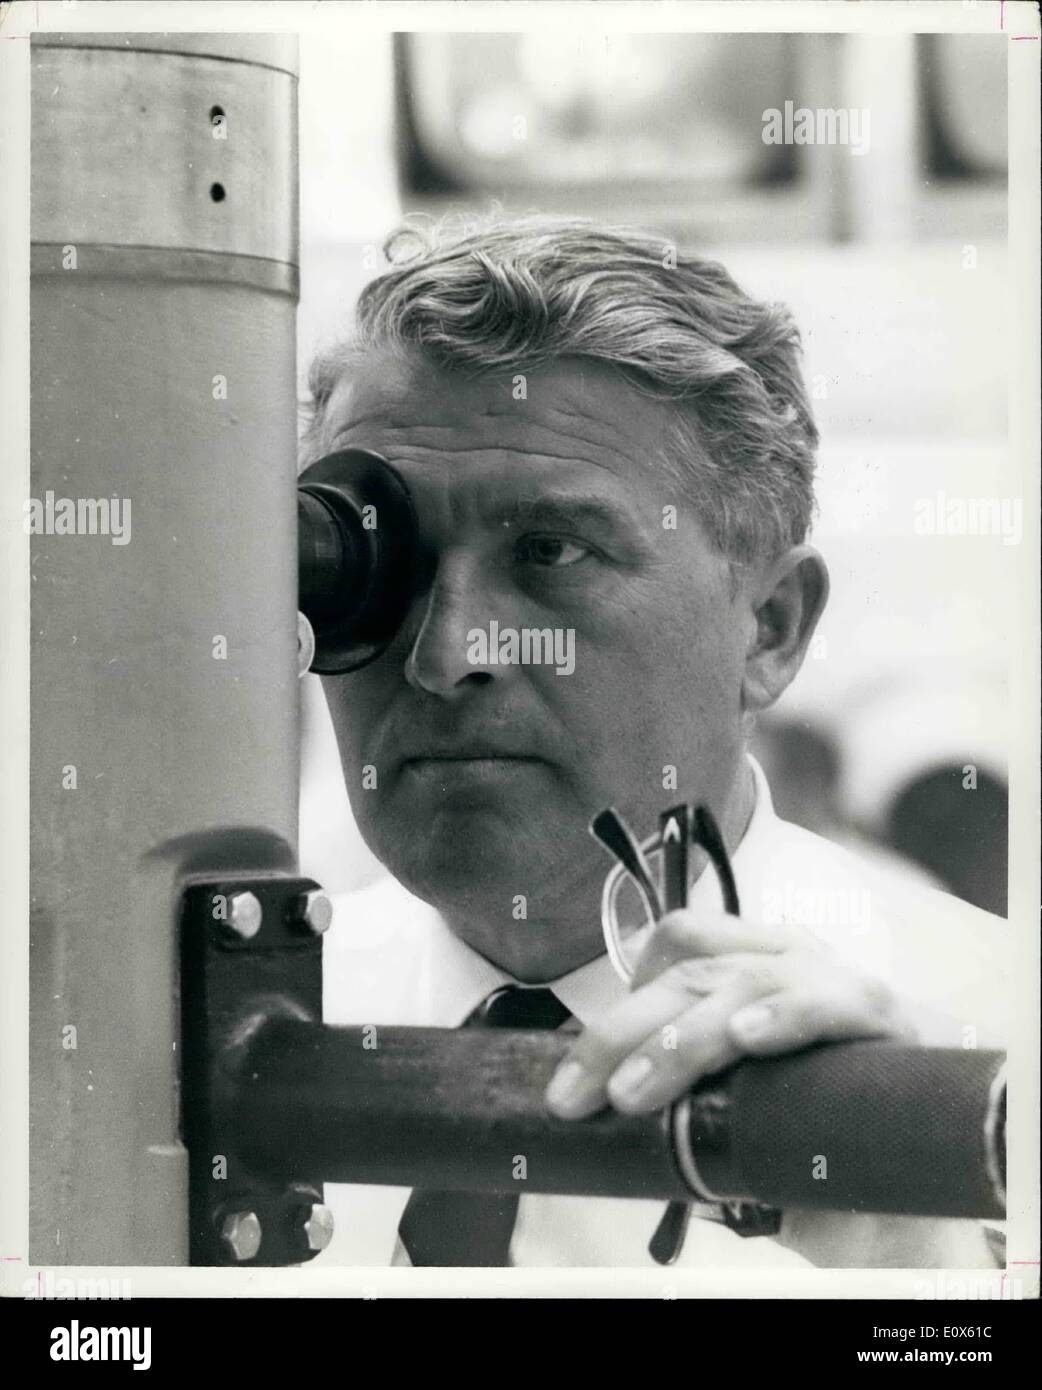 05 maggio 1965 - Cape Kennedy - Il Dottor Wernher von Braun, direttore della NASA-Marshall Space Center Huntsville, ALA., osserva il Foto Stock